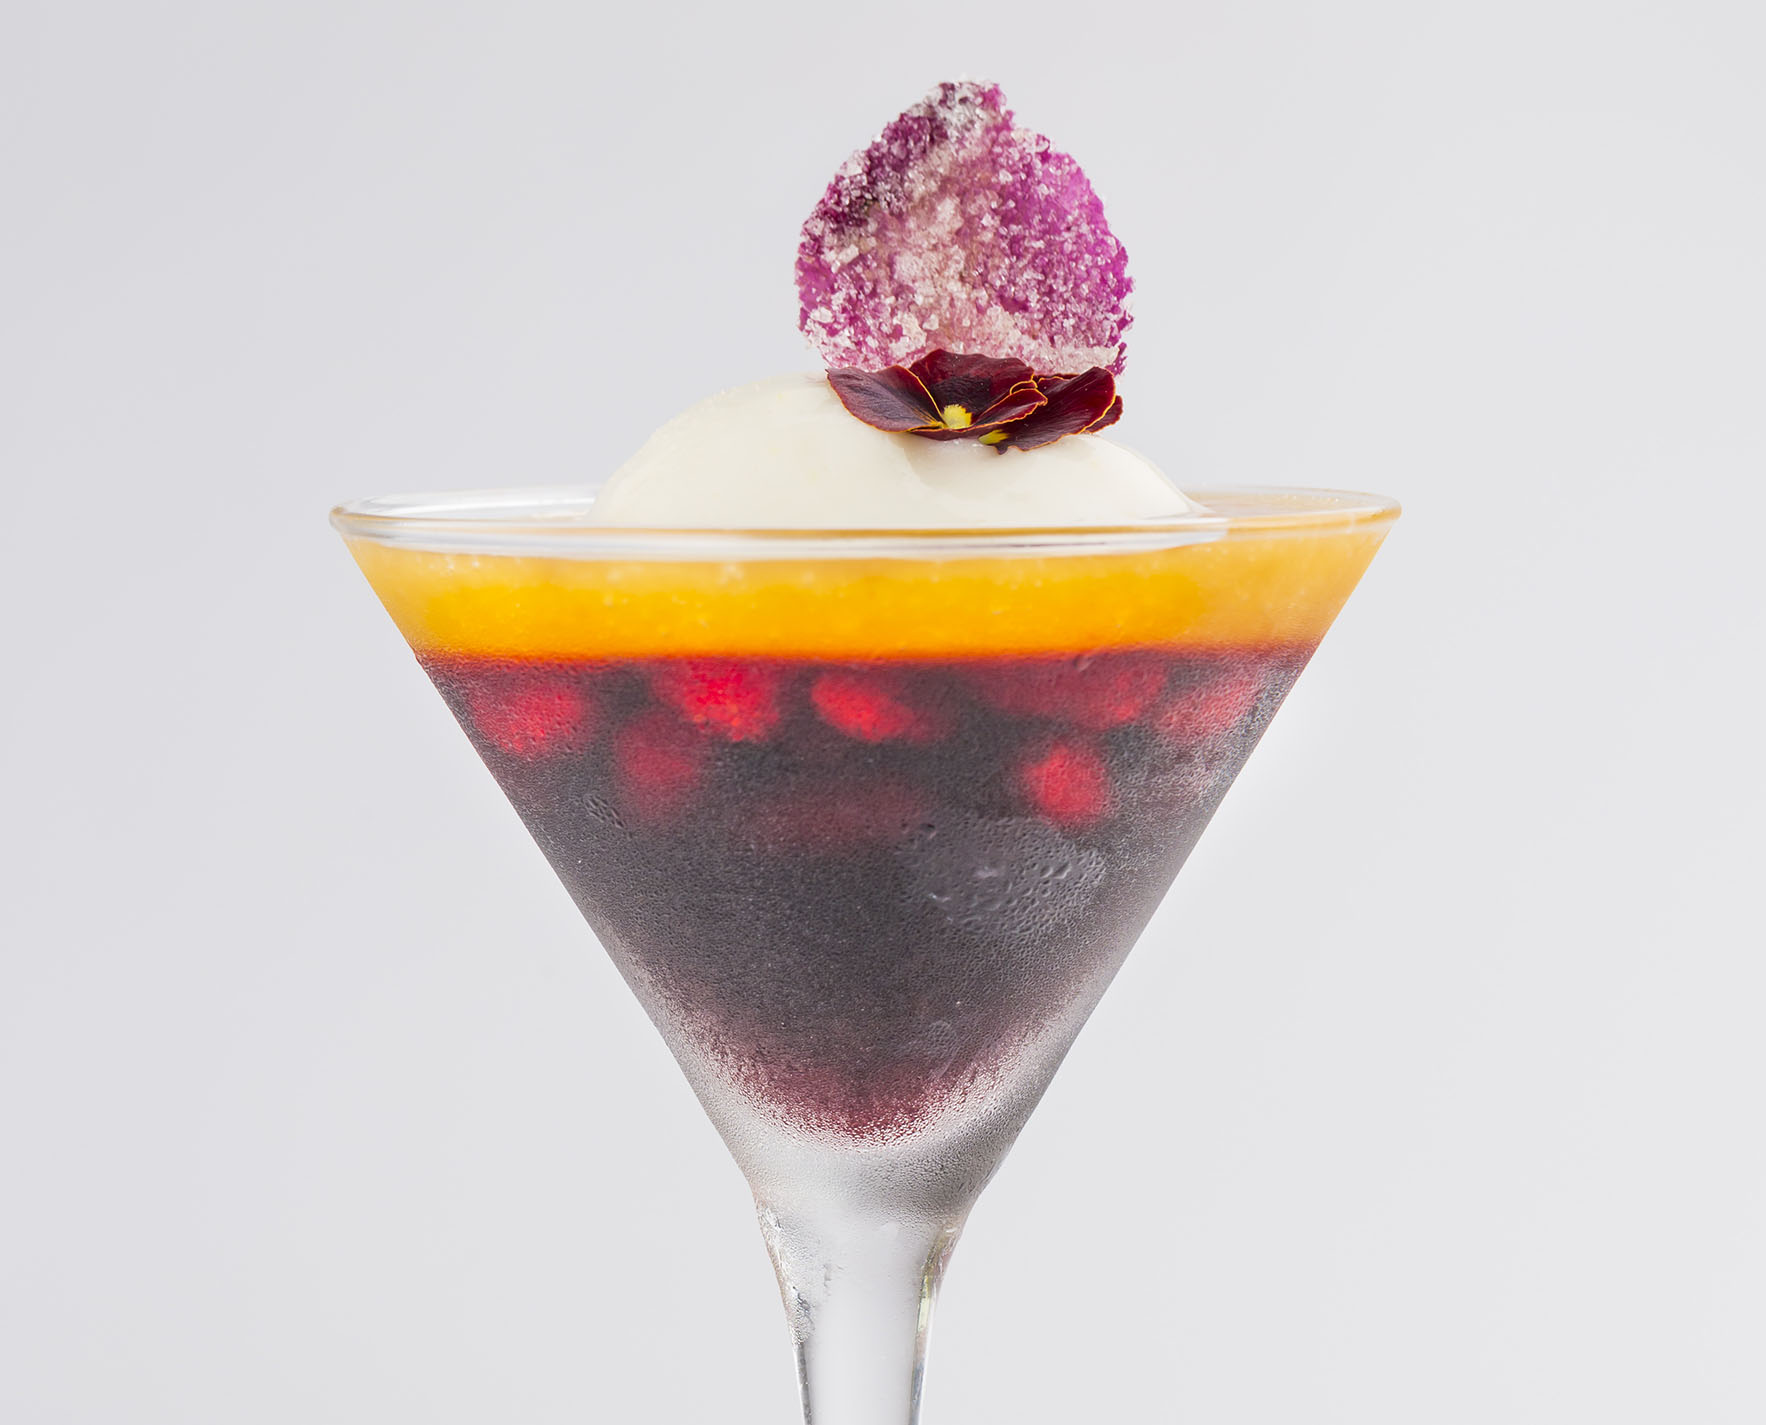 La fragola e la rosa in zephyr all’ibiscus, cocktail-dessert di Maurizio Urso